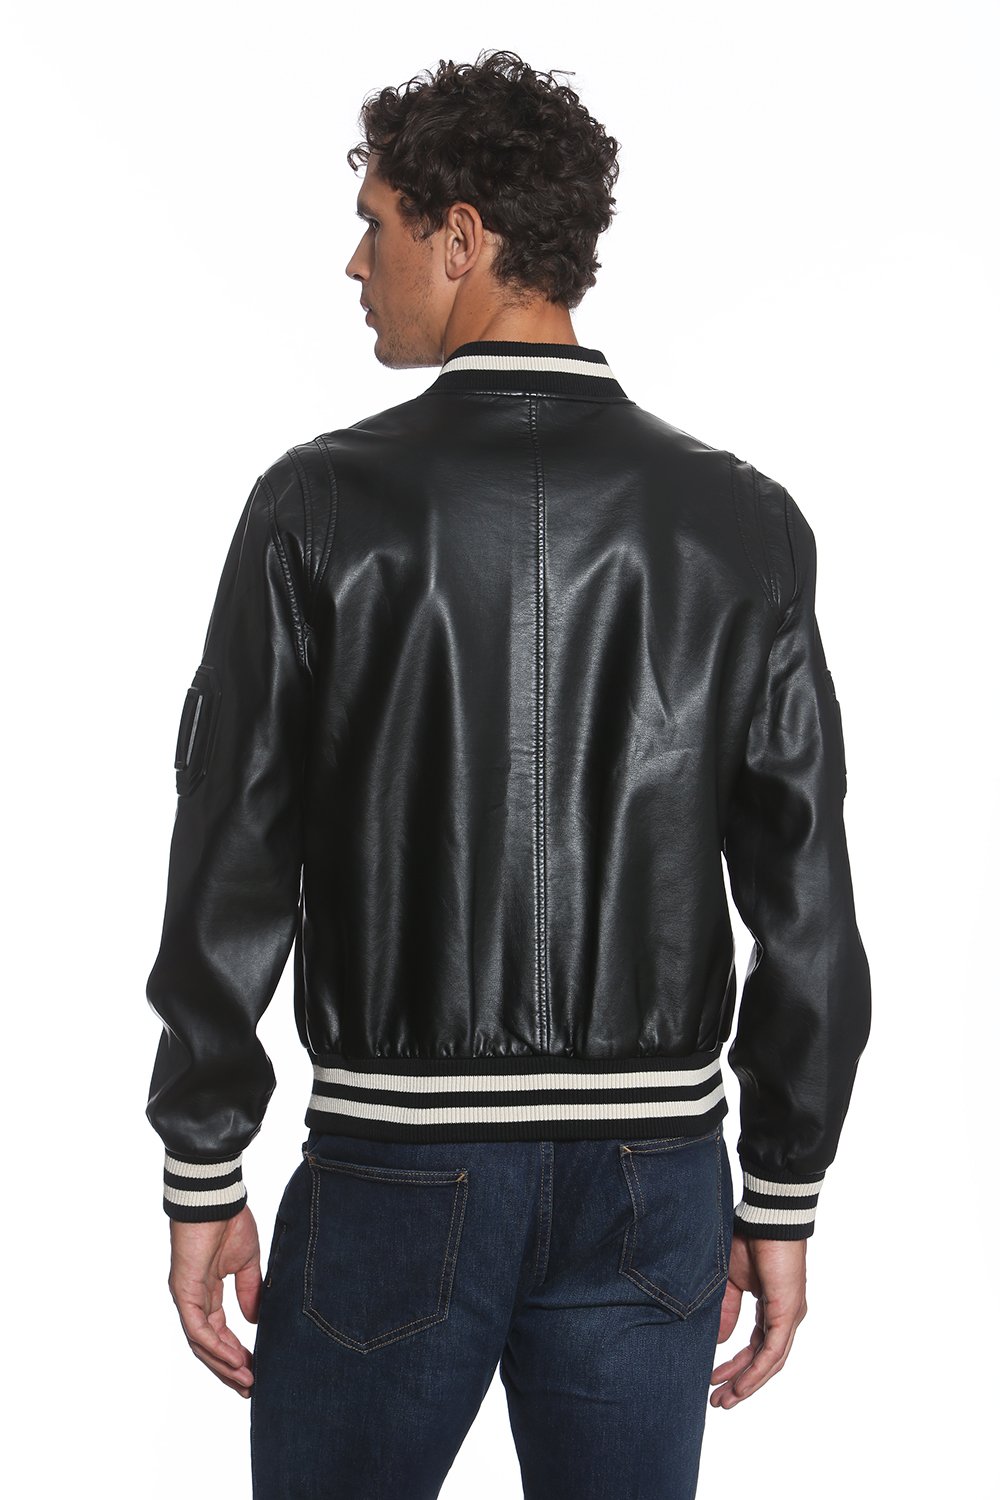 MEMBERS ONLY Men's Bleeker Faux Leather Varsity Jacket $150 NEW | eBay